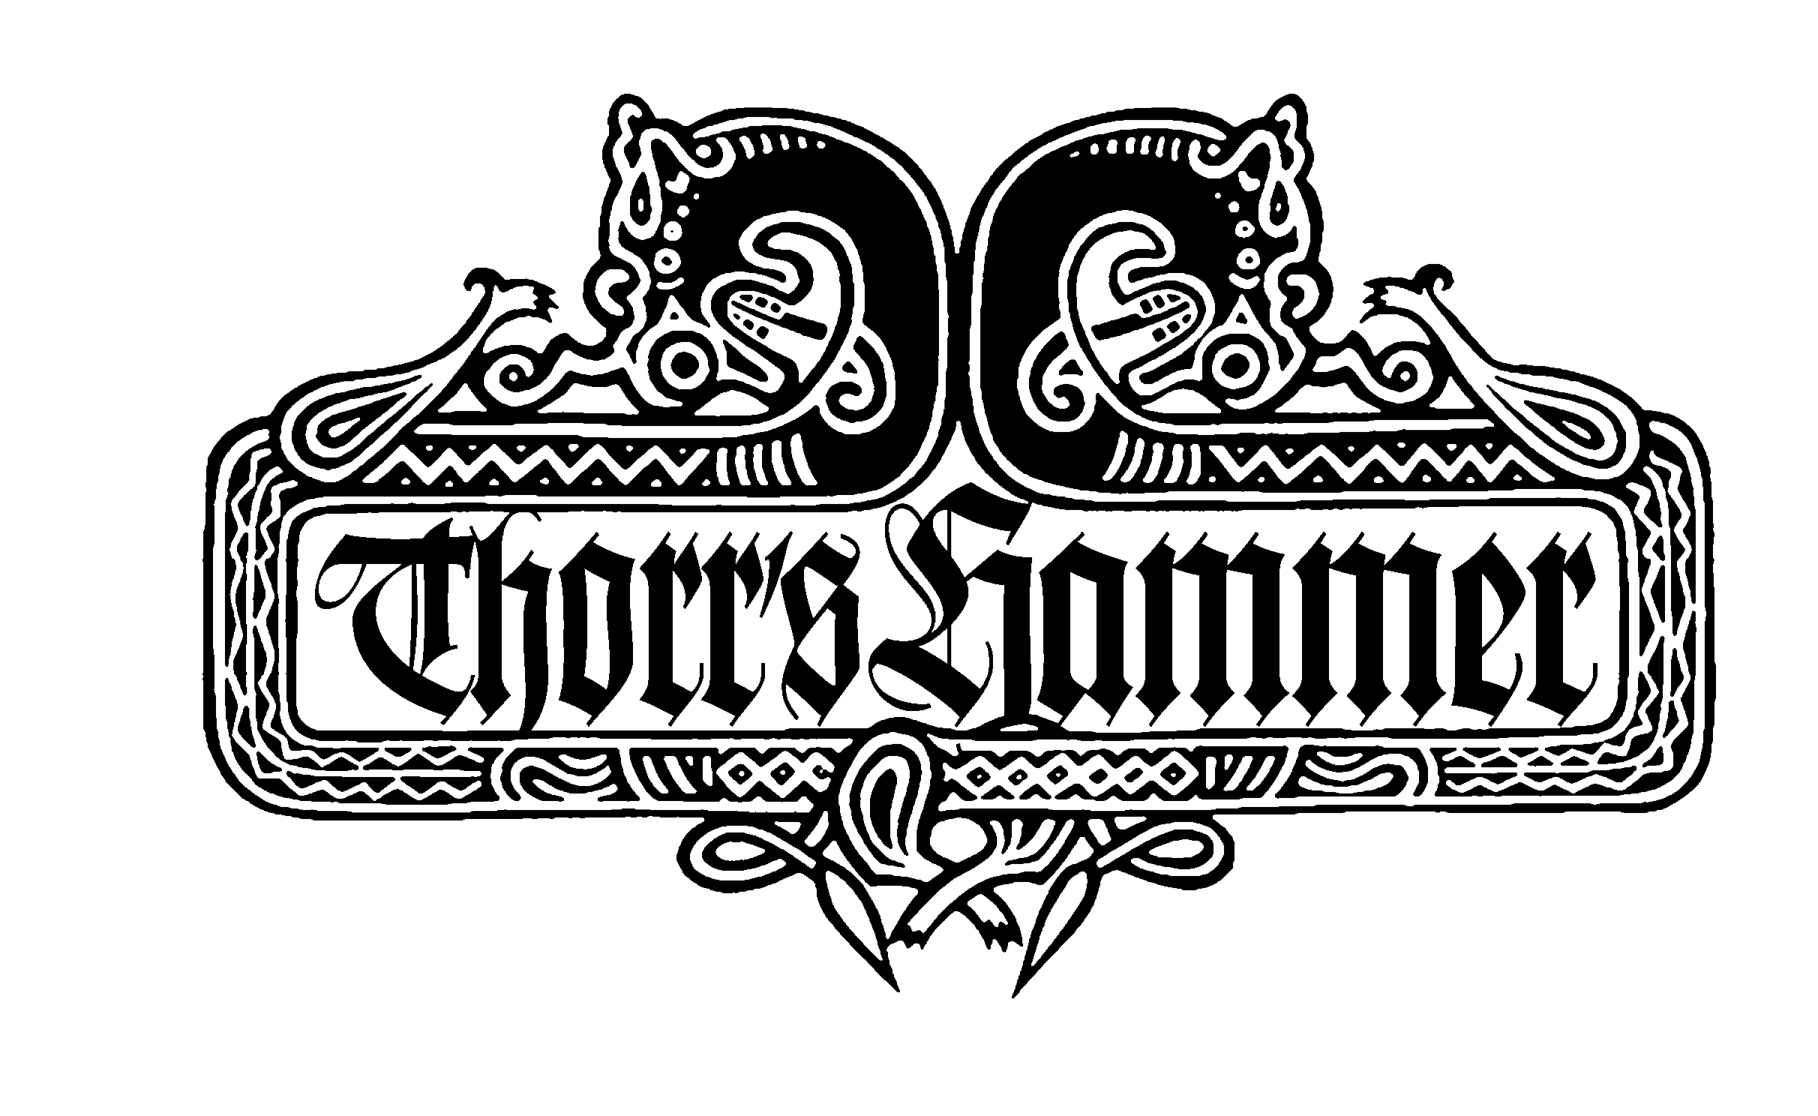 Thorr’s Hammer: Biografia e Resenha do álbum “Dommedagsnatt”